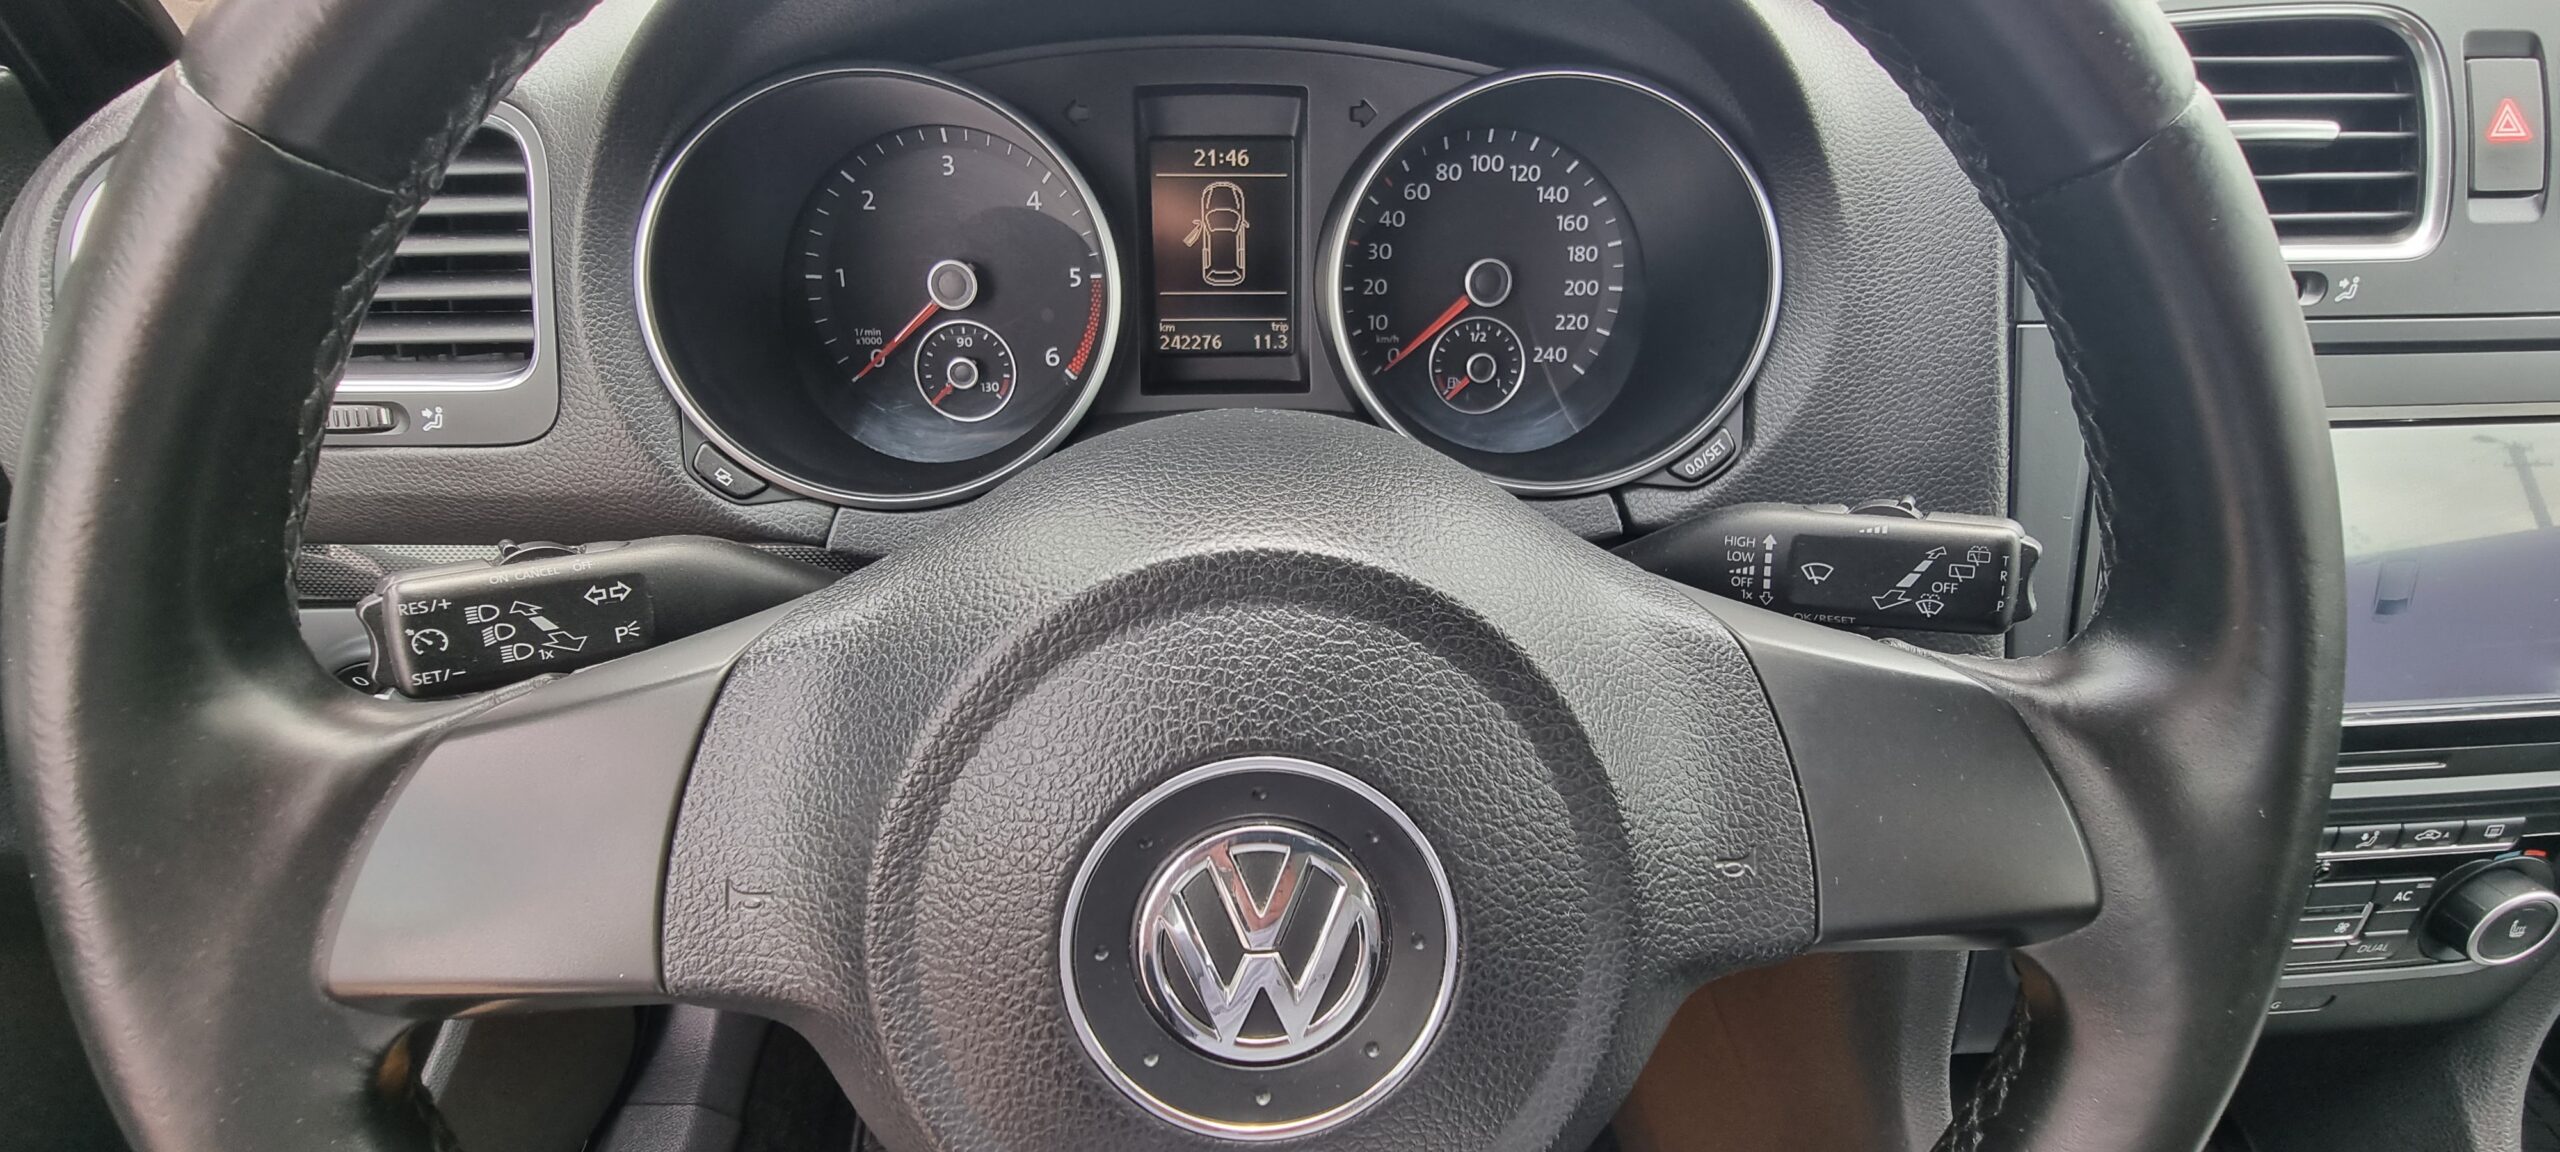 VW GOLF 6, 1.6 TDI, 105 CP, EURO 5, AN 2012